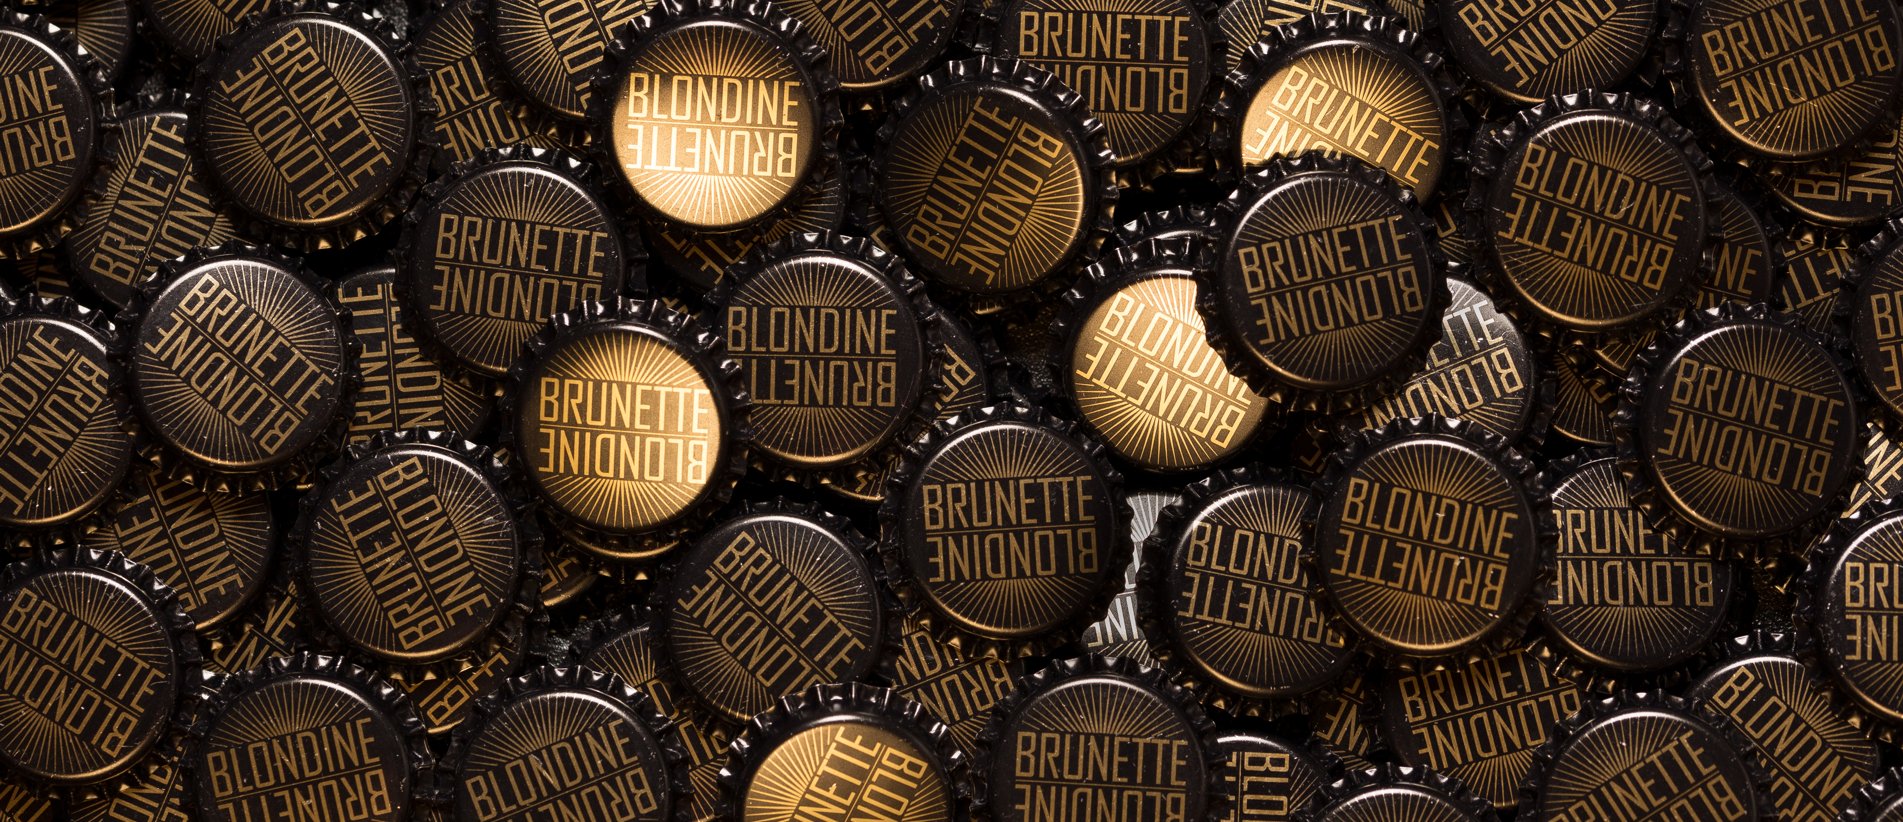 Blondine and Brunette Craftet Beer